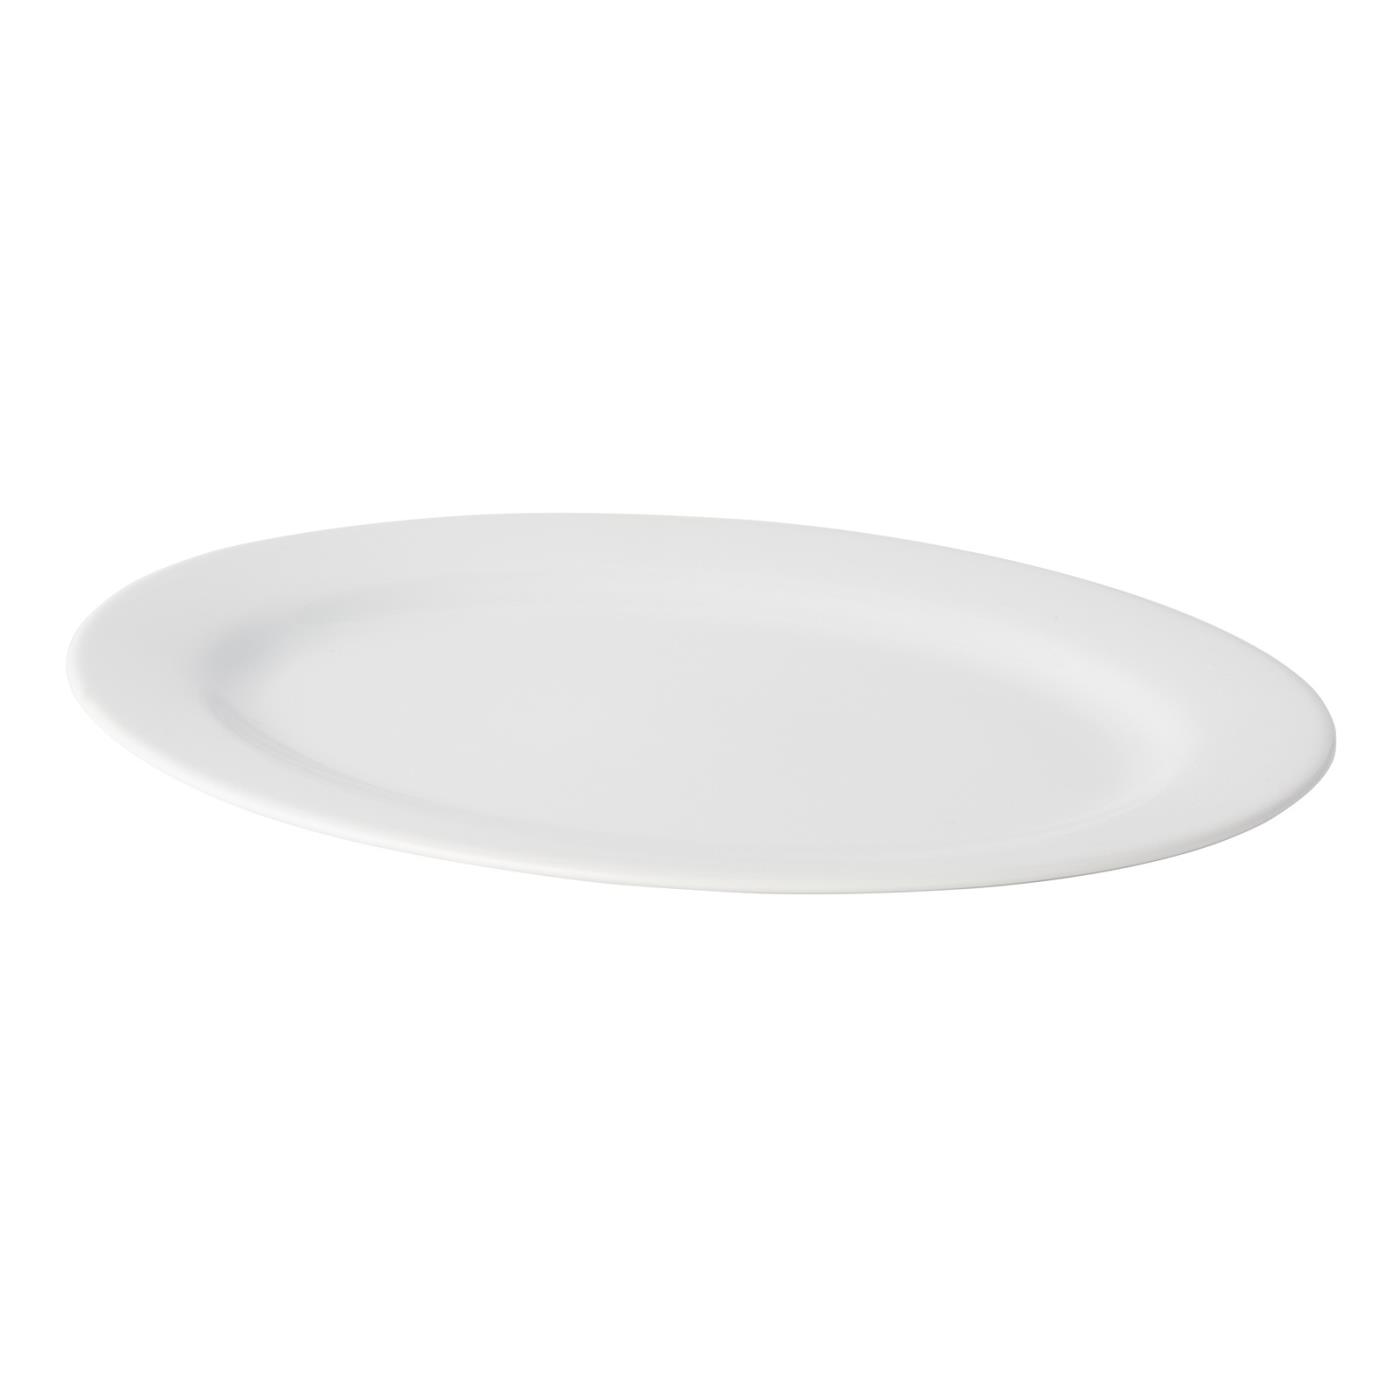 White Ceramic Oval Platter - 18"